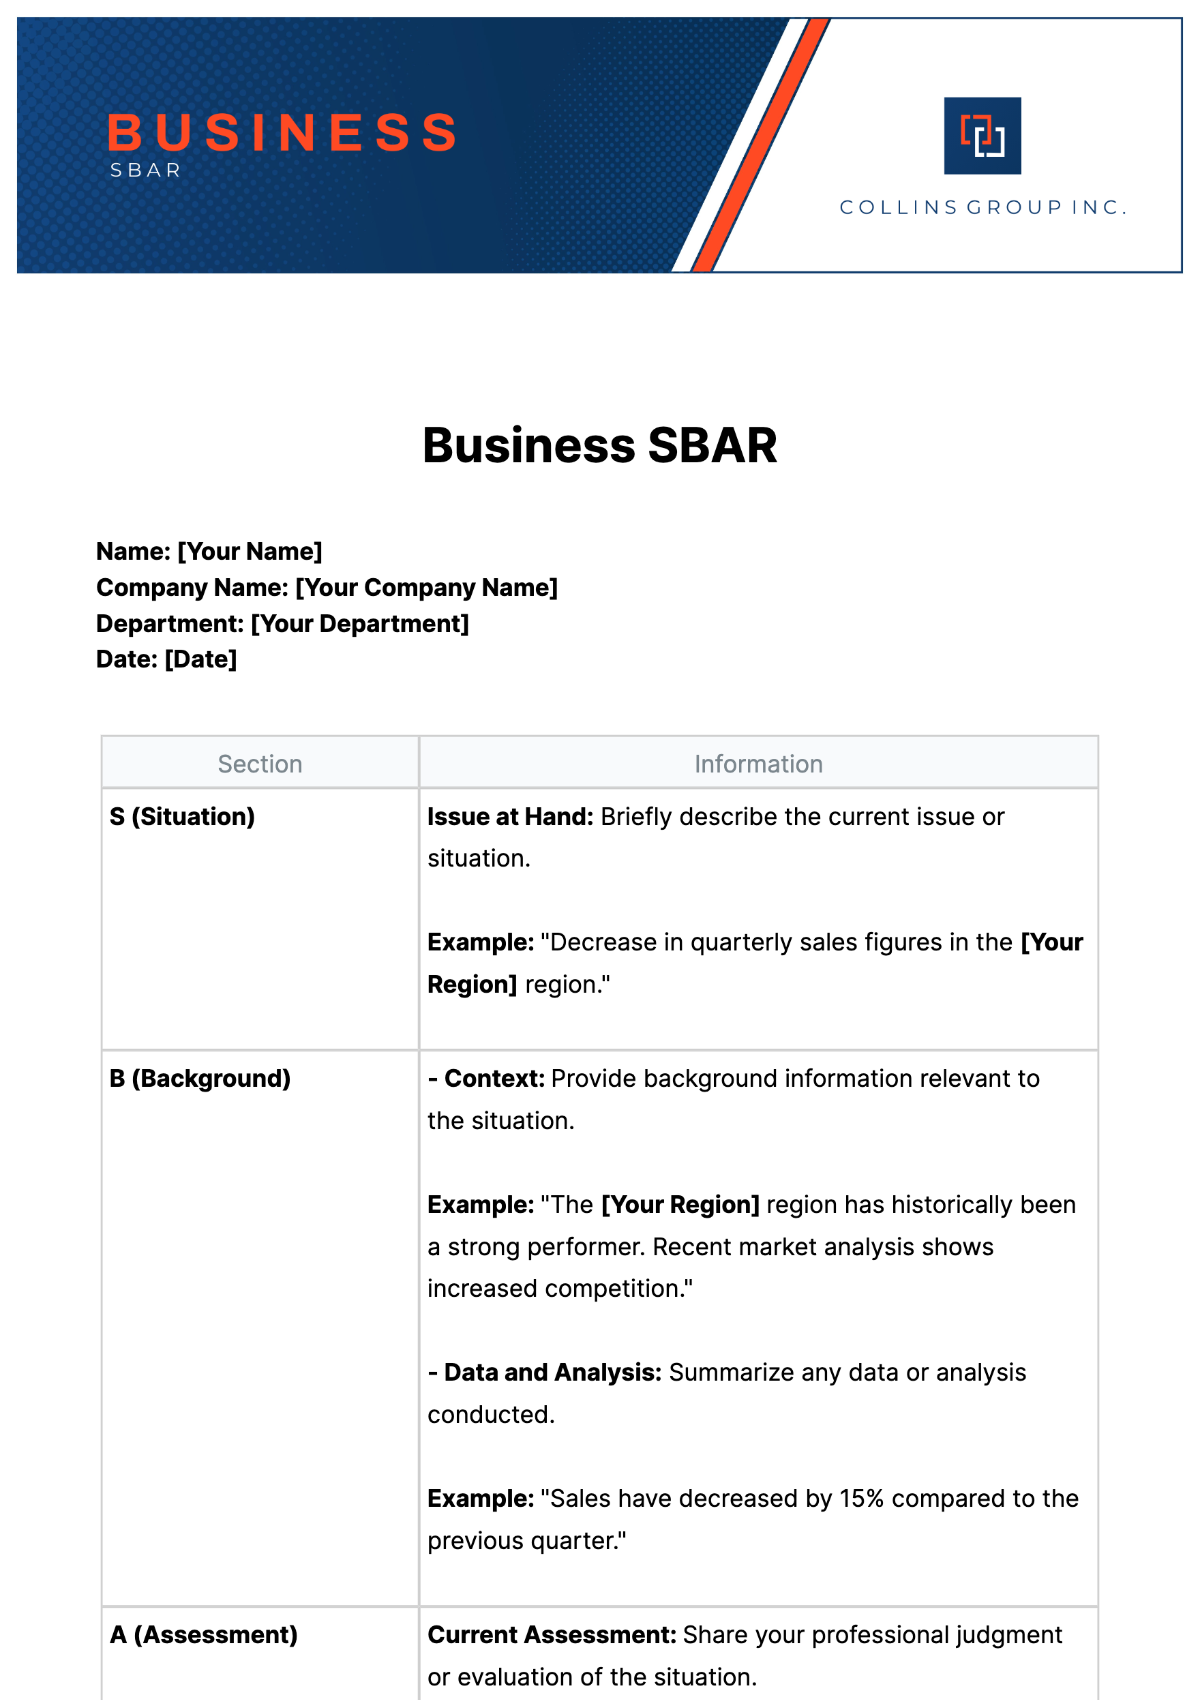 Business SBAR Template